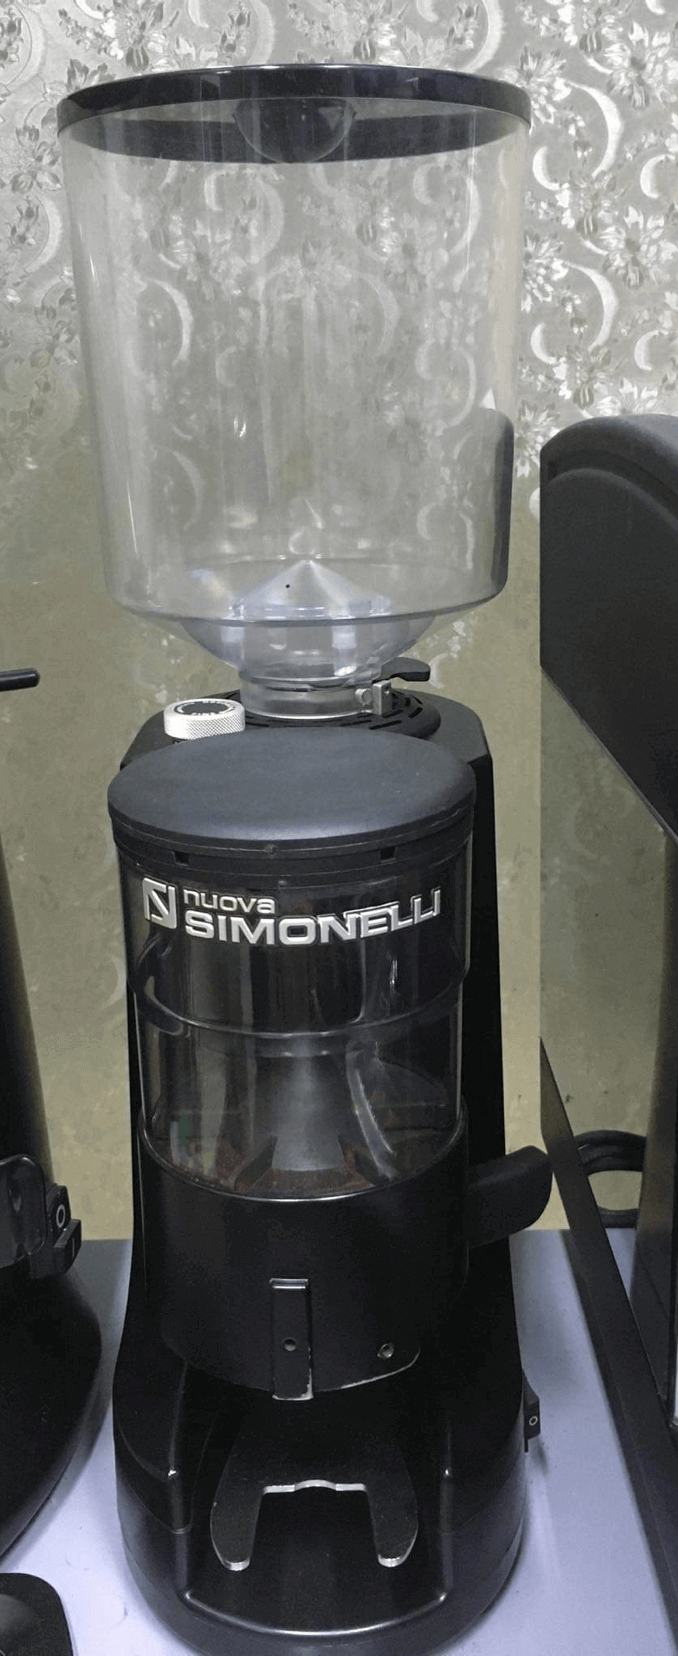 Máy xay cà phê Nouva Simonelli là dòng máy chuyên nghiệp nổi tiếng của Ý